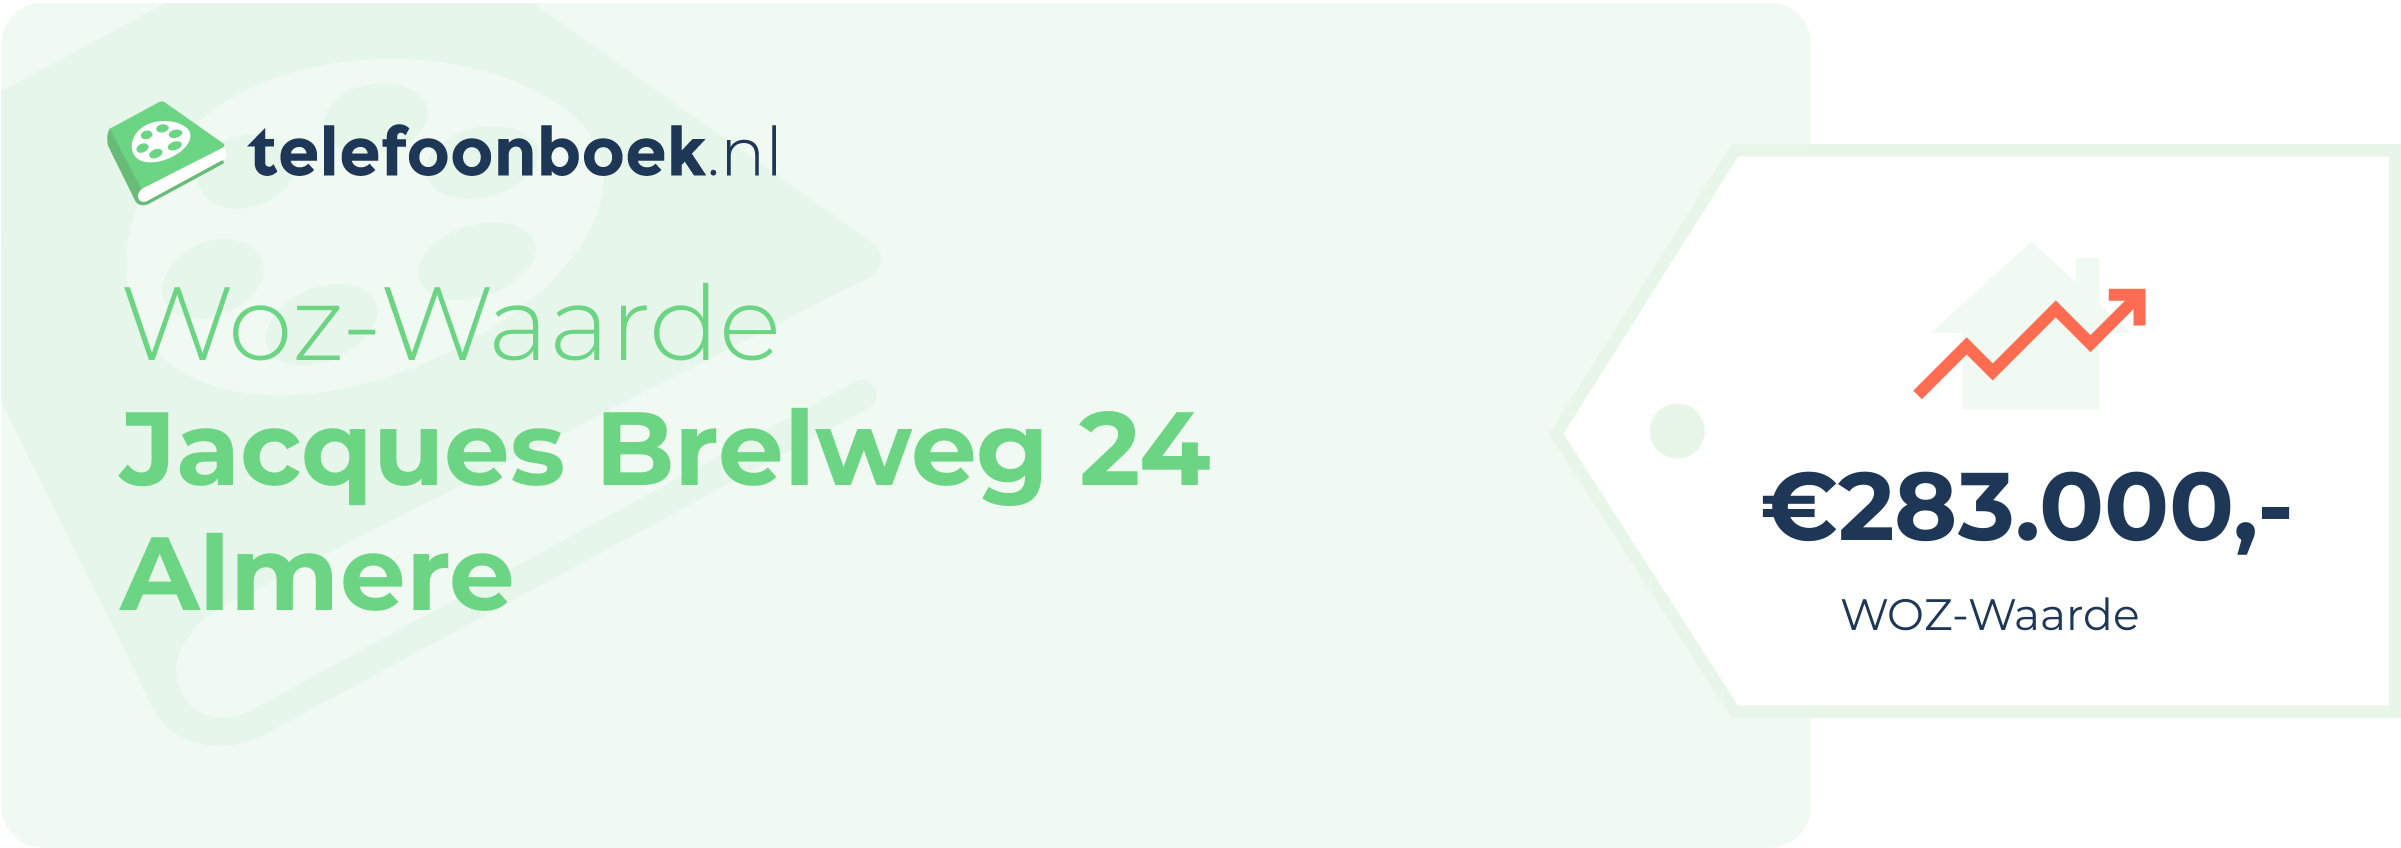 WOZ-waarde Jacques Brelweg 24 Almere